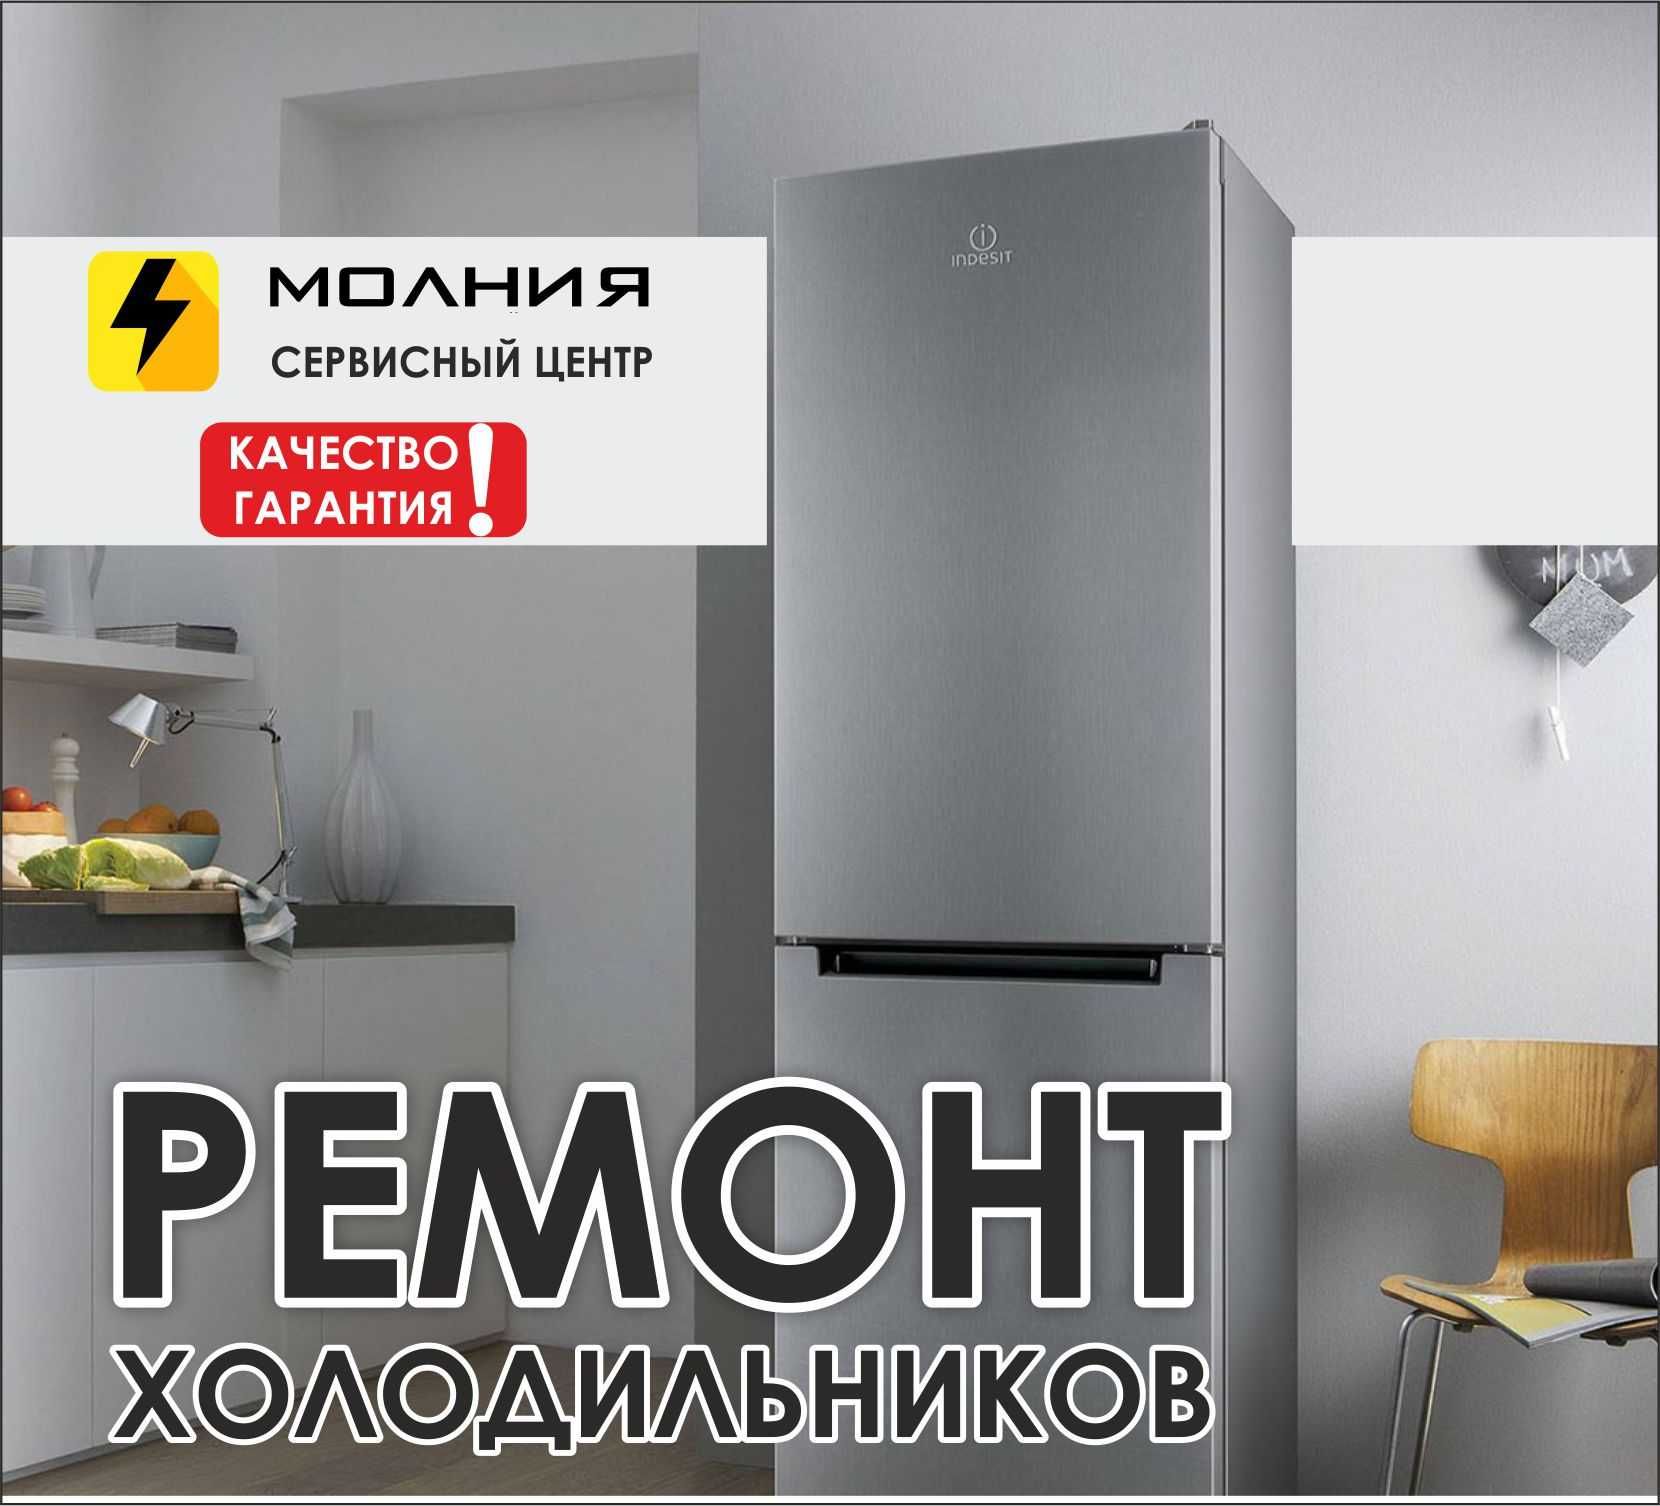 Сервис Центр МОЛНИЯ| Ремонт холодильников и морозильников| Качественно